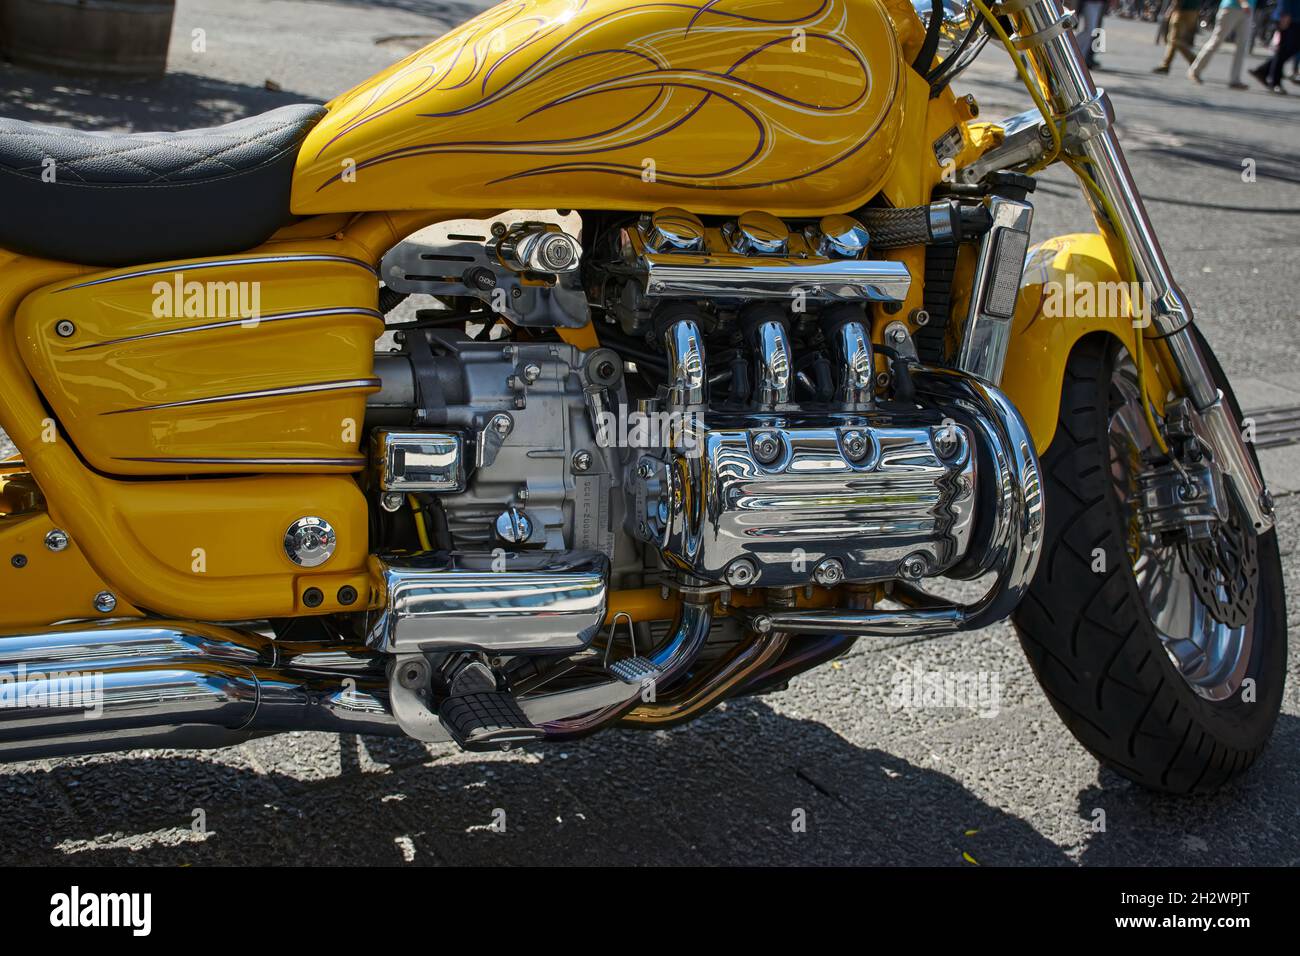 Dettaglio di una moto, una Honda Valkyrie ricostruita (Doc Willow Bike) in  giallo brillante e molte parti cromate Foto stock - Alamy